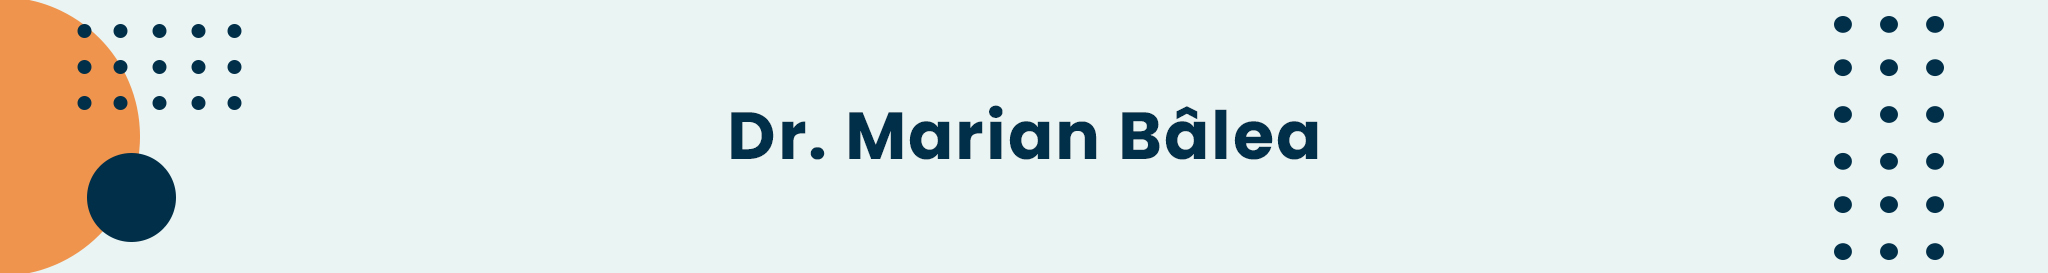 banner_desktop_marian_balea